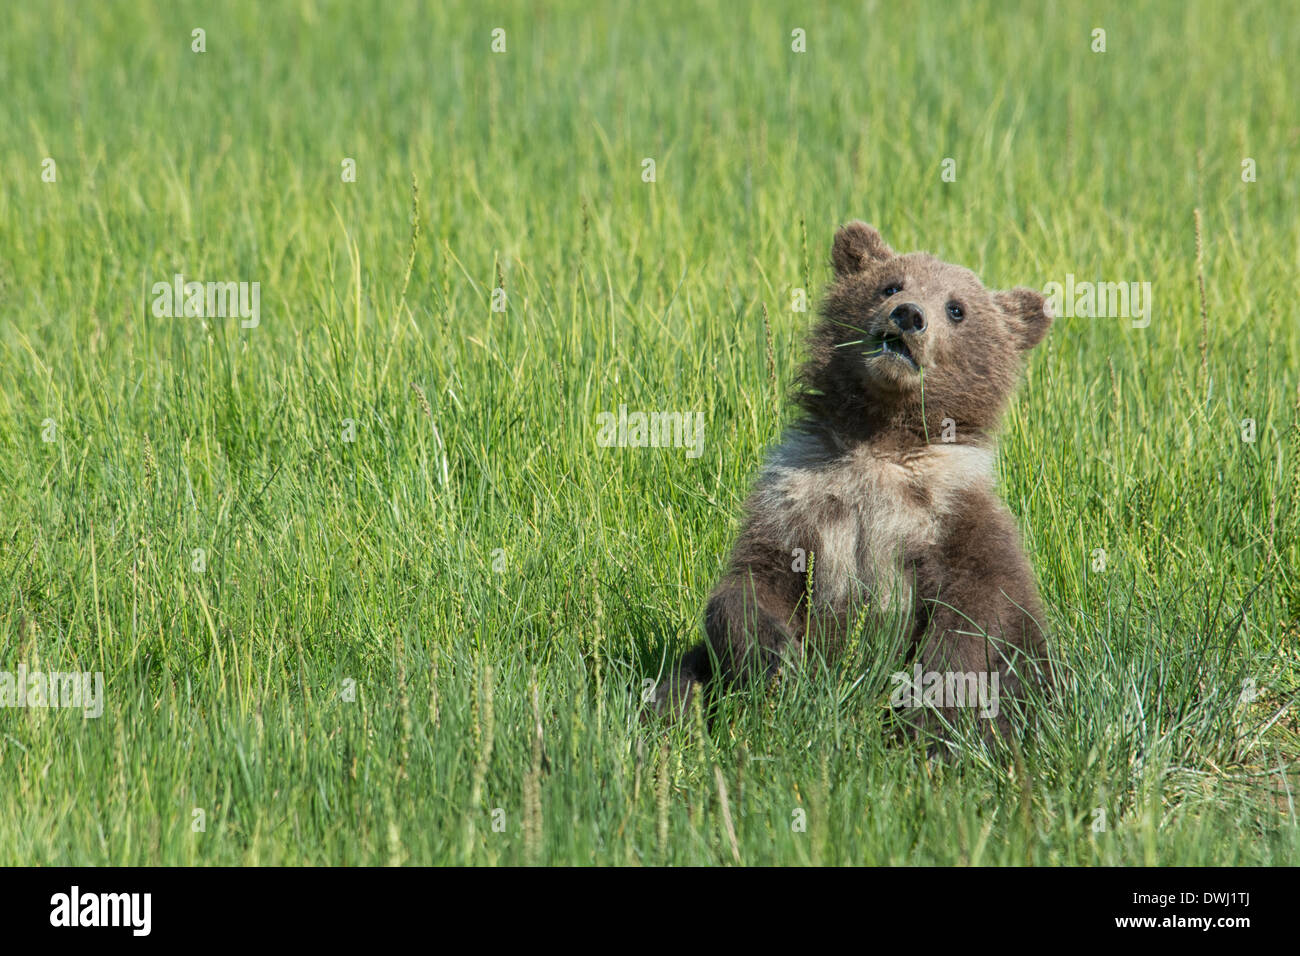 Orso grizzly cucciolo della molla con un colletto bianco e le macchie, Ursus arctos, mangiare sedge erba, il Parco Nazionale del Lago Clark, Alaska, STATI UNITI D'AMERICA Foto Stock